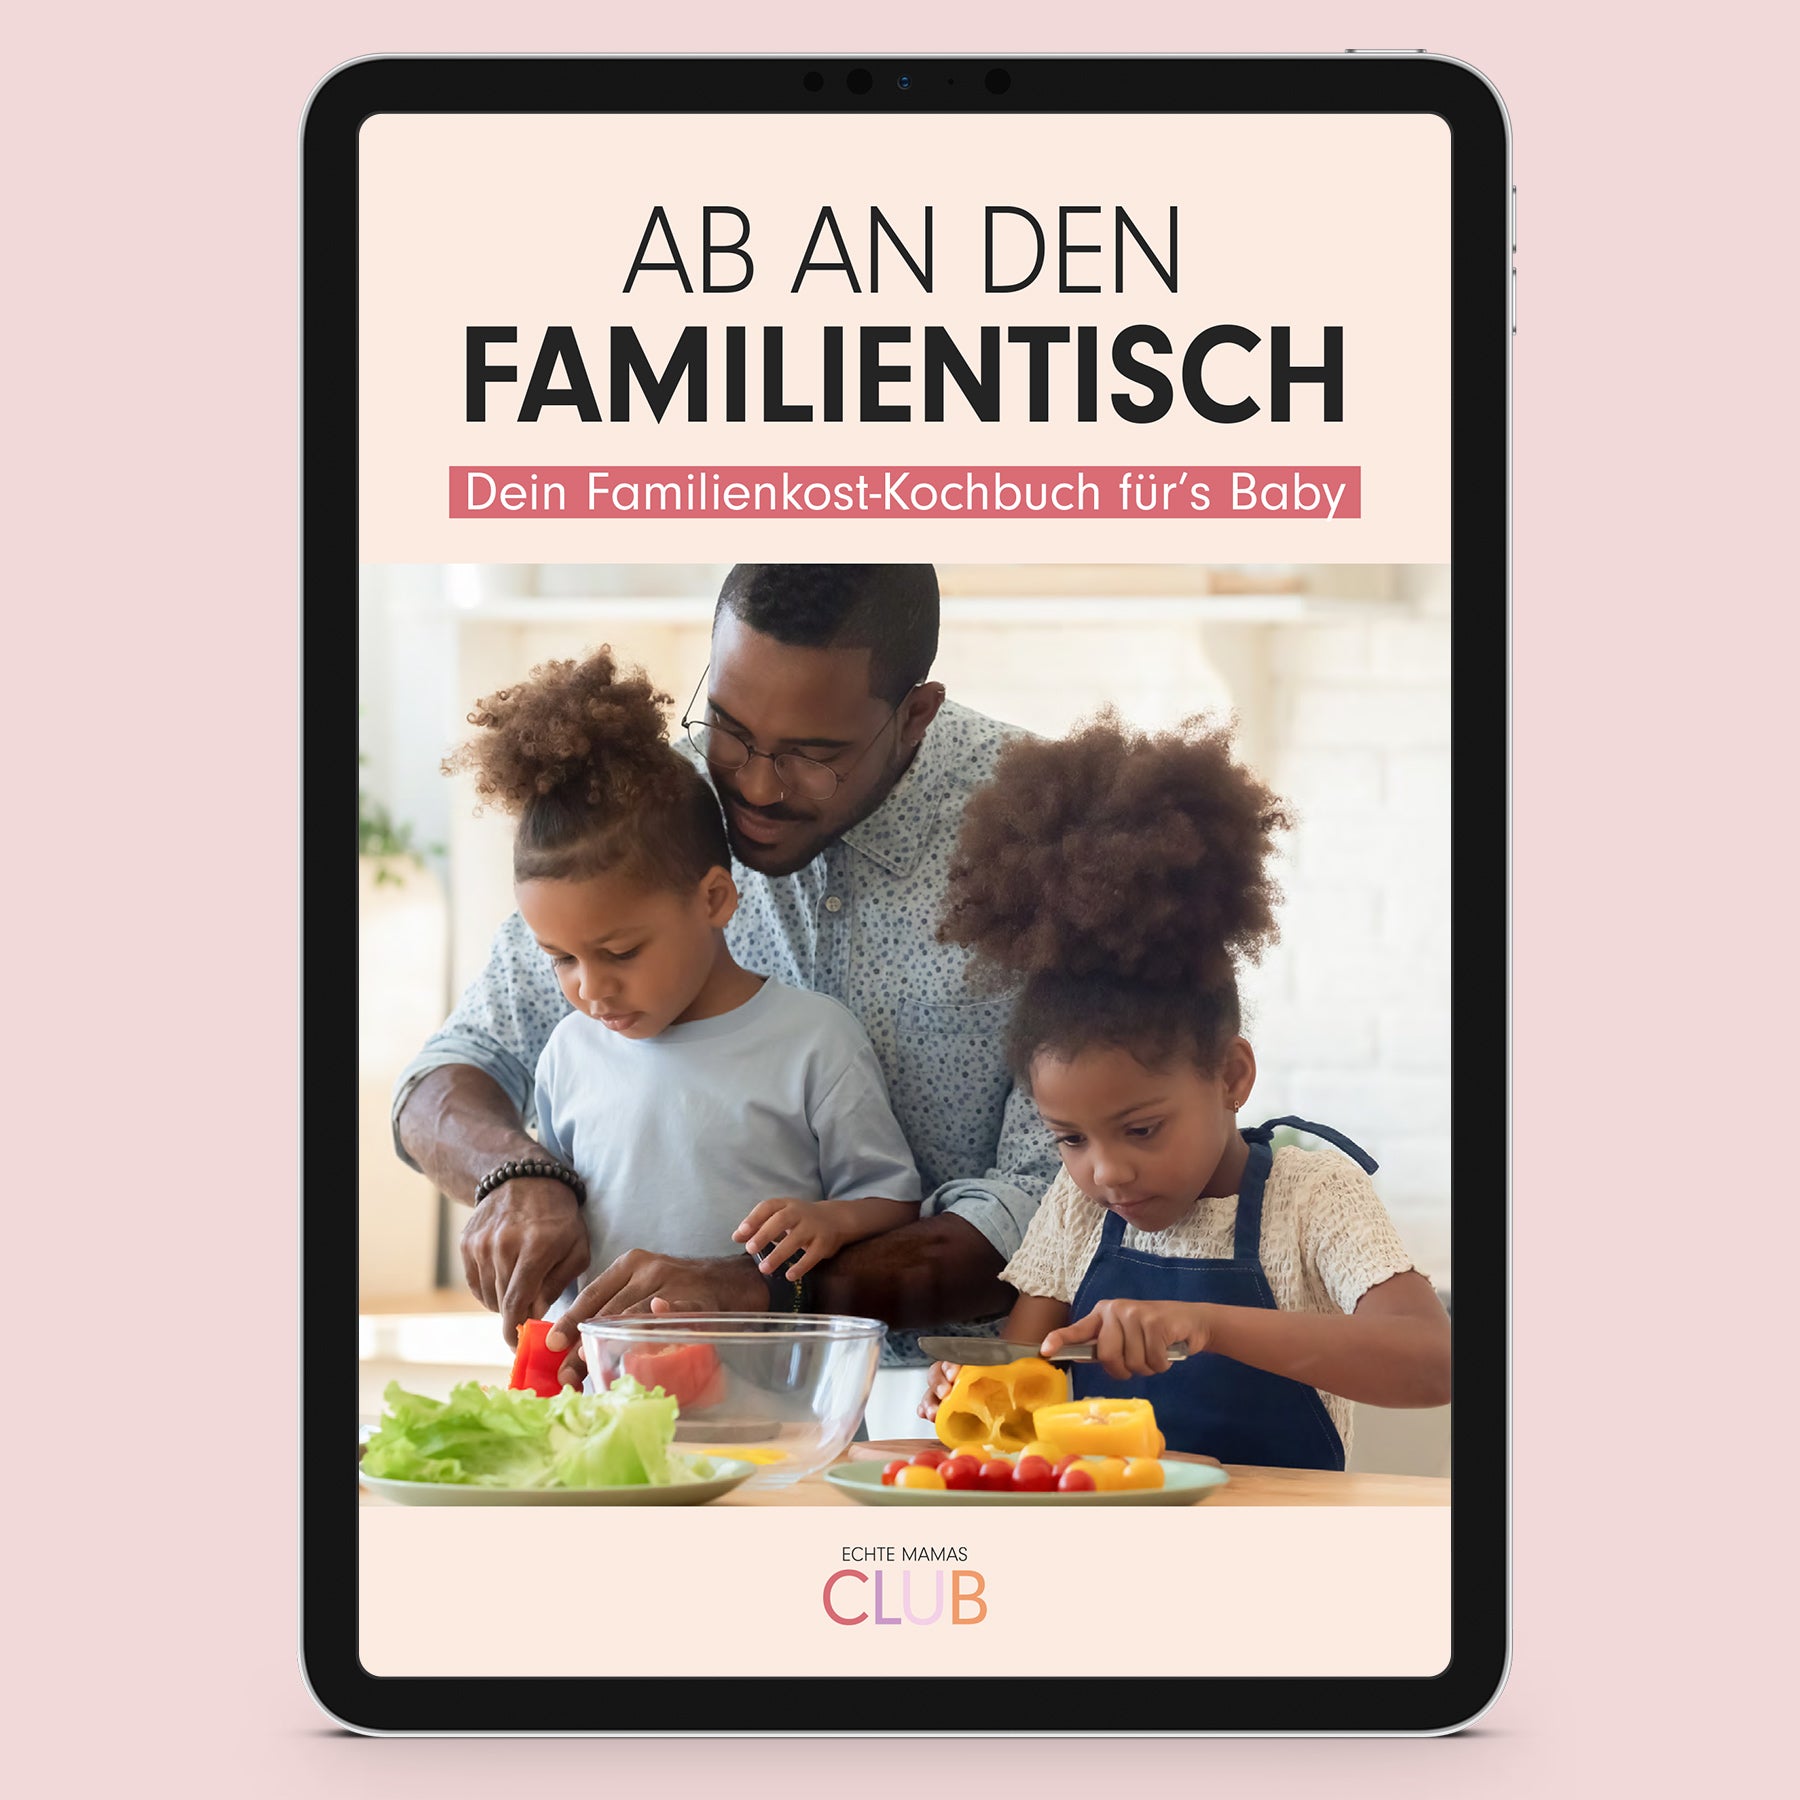 Ebook: AB AN DEN FAMILIENTISCH – DEIN FAMILIENKOST-KOCHBUCH FÜR’S BABY